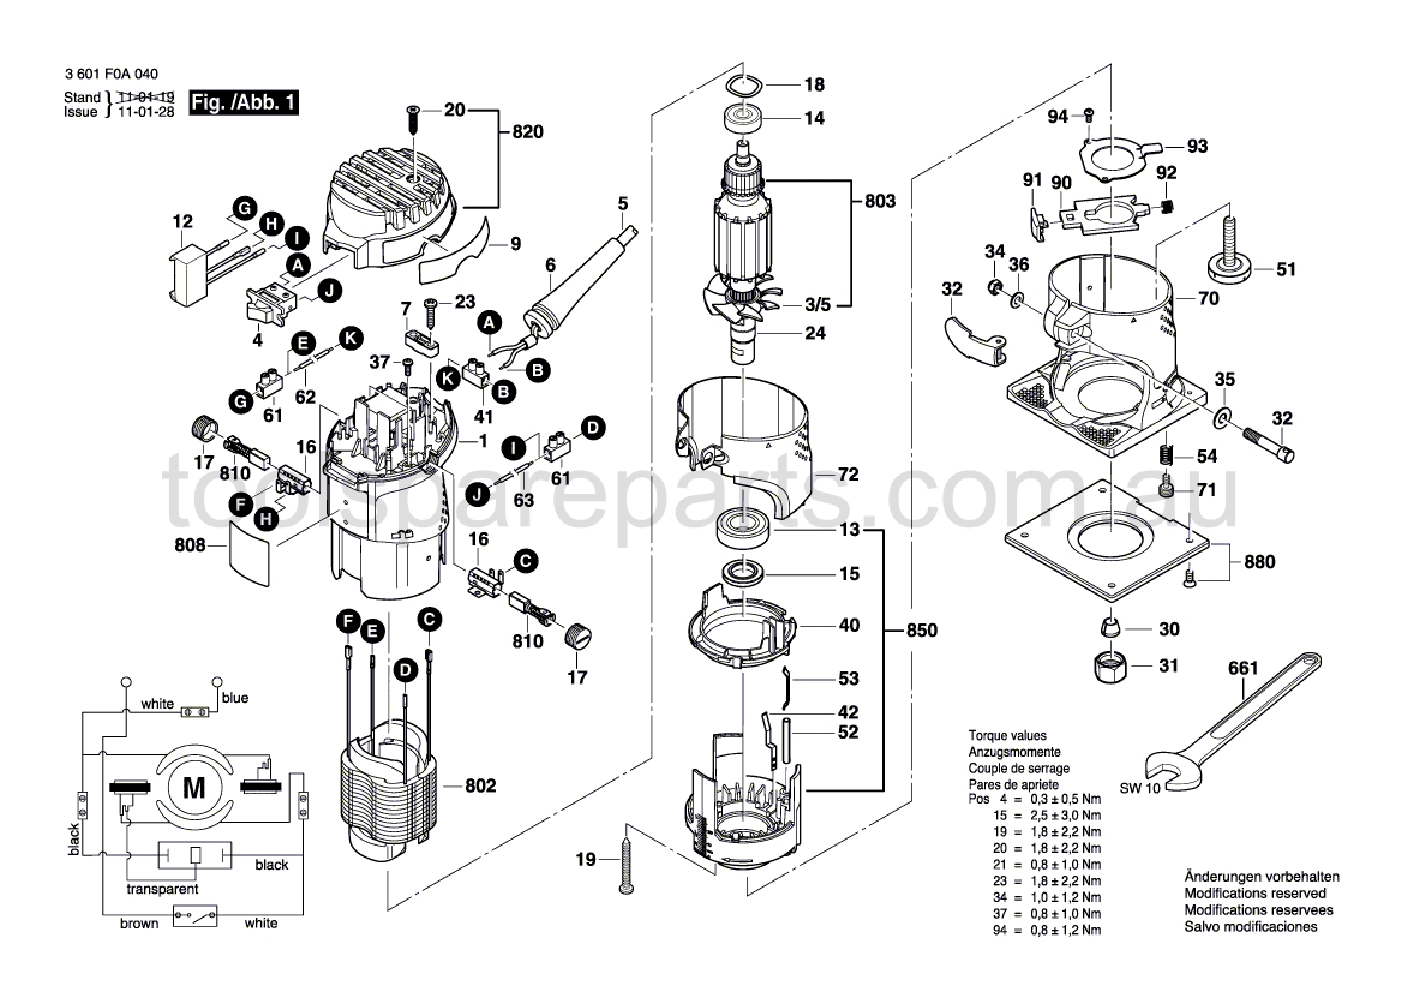 Bosch GMR 1 3601F0A040  Diagram 1